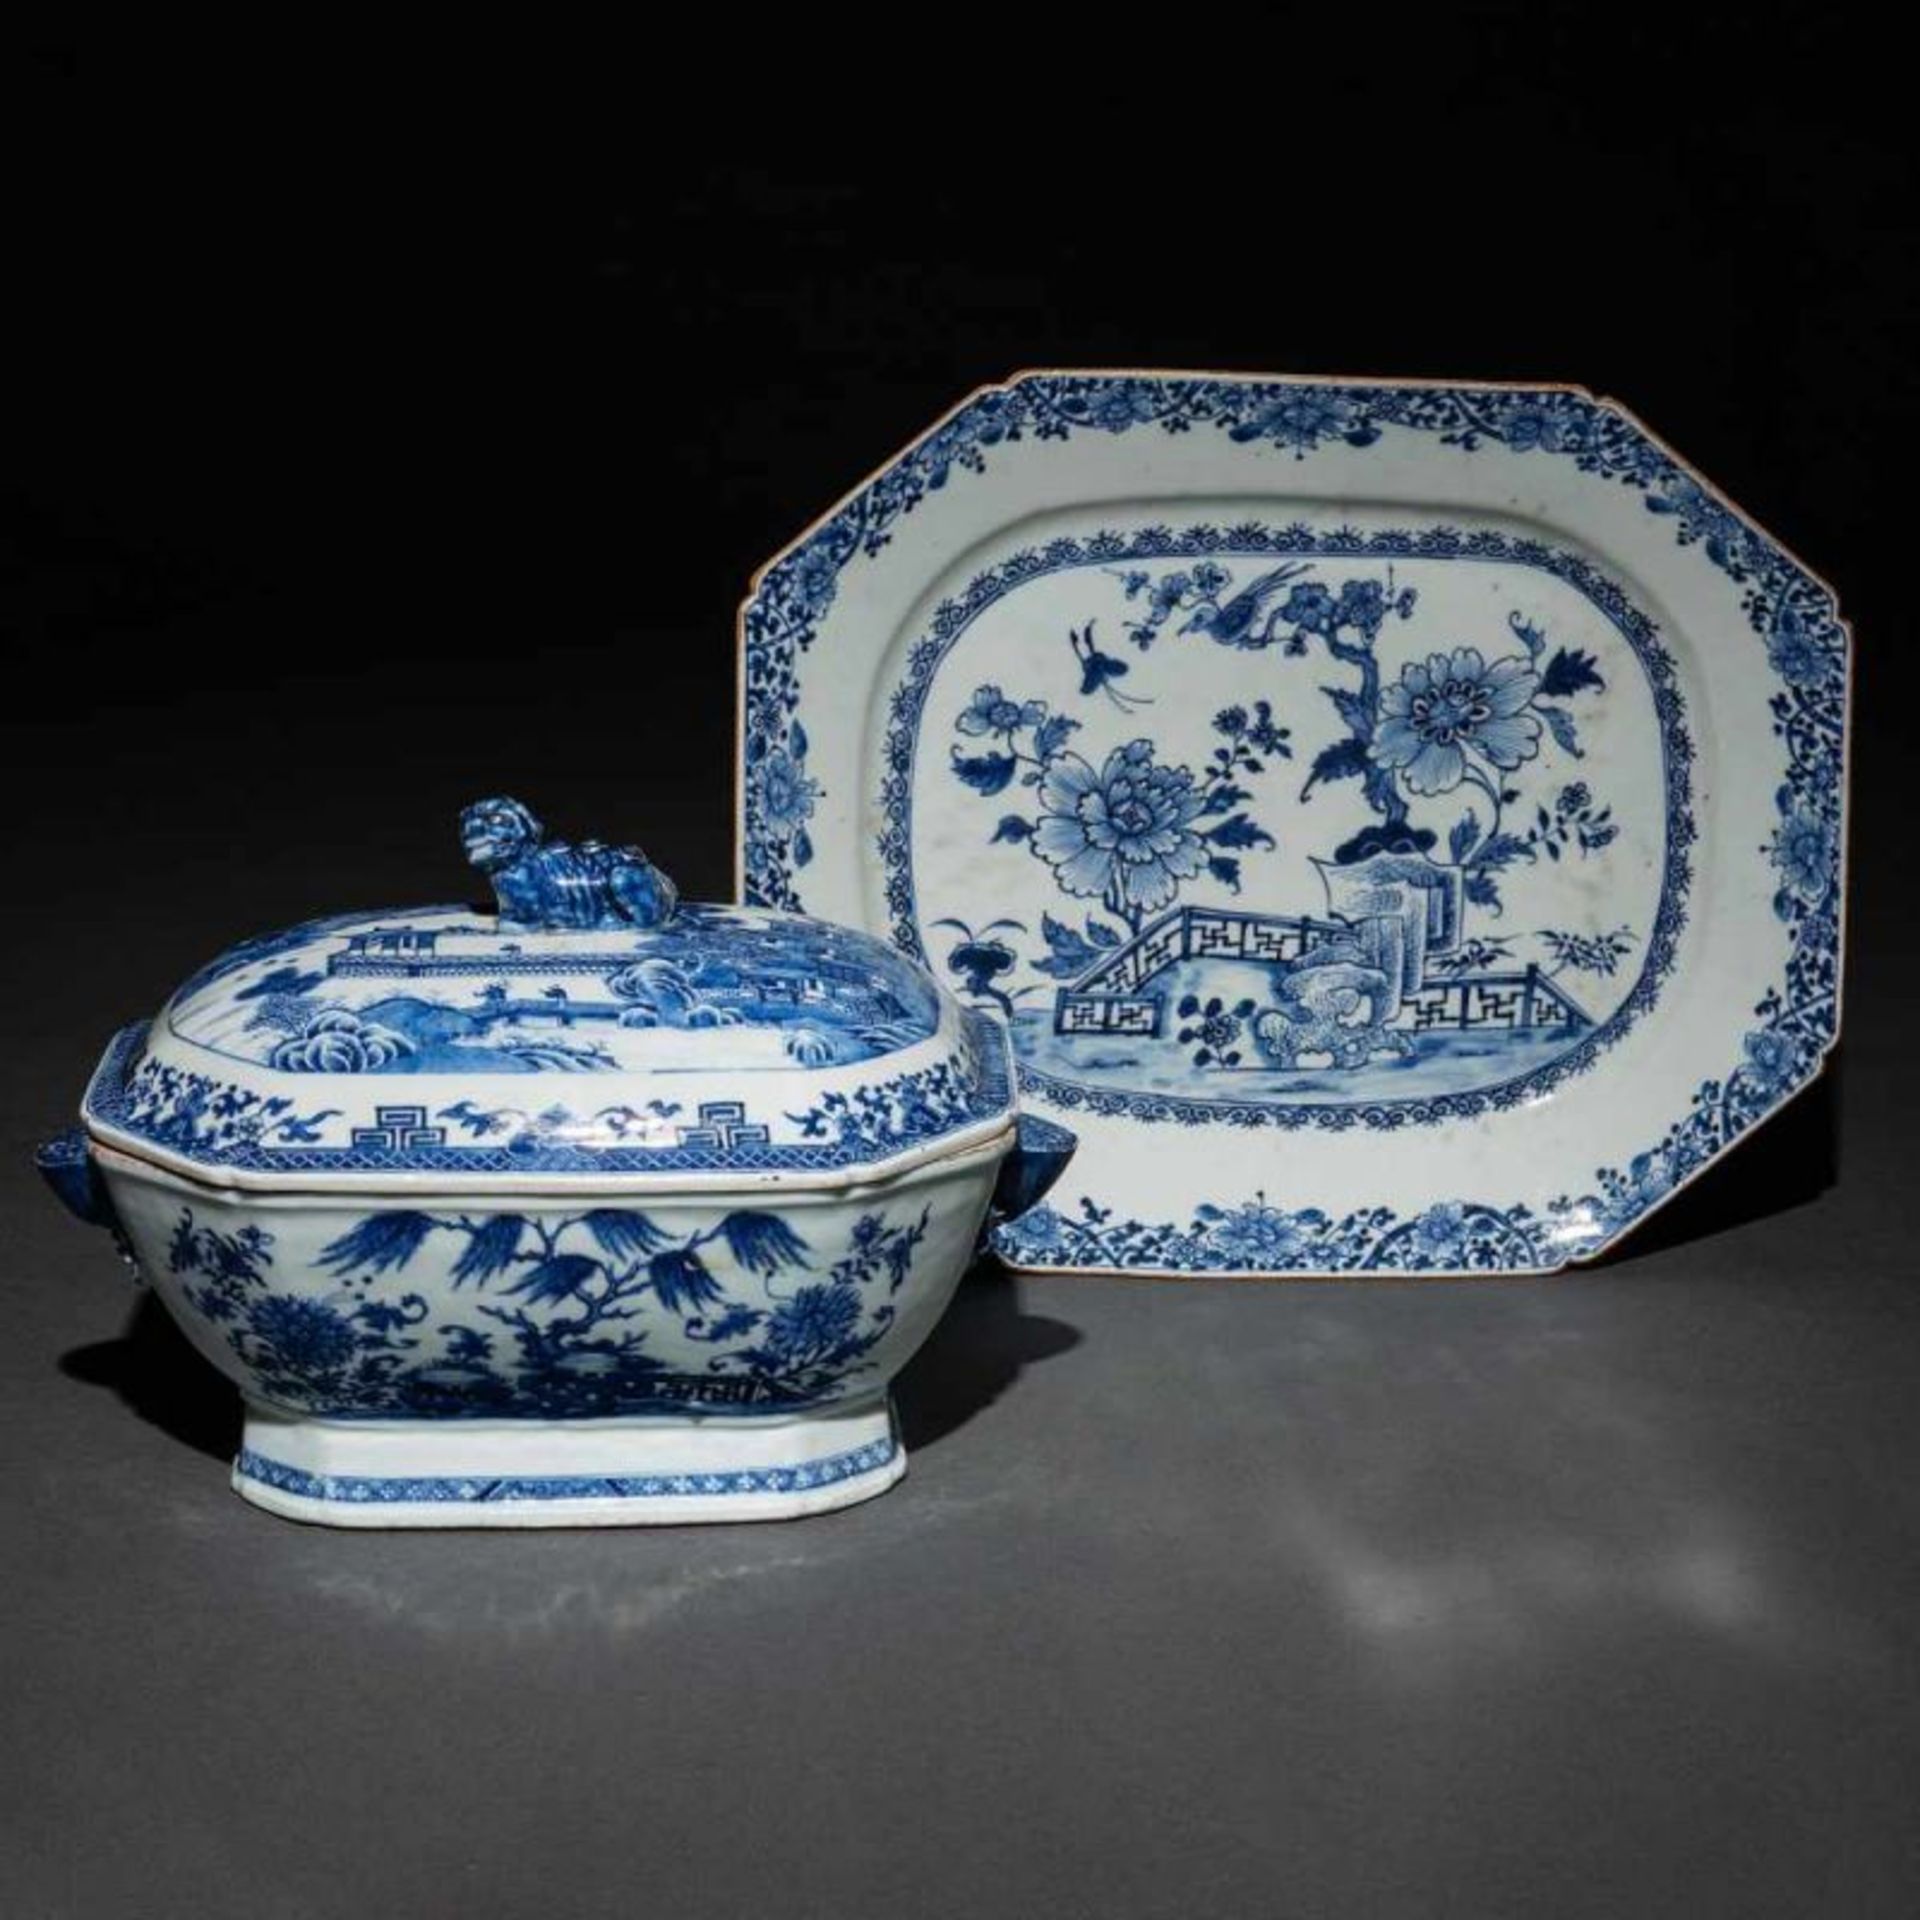 Sopera y bandeja en porcelana china azul y blanca. Finales del siglo XVIIIDecorada con escenas